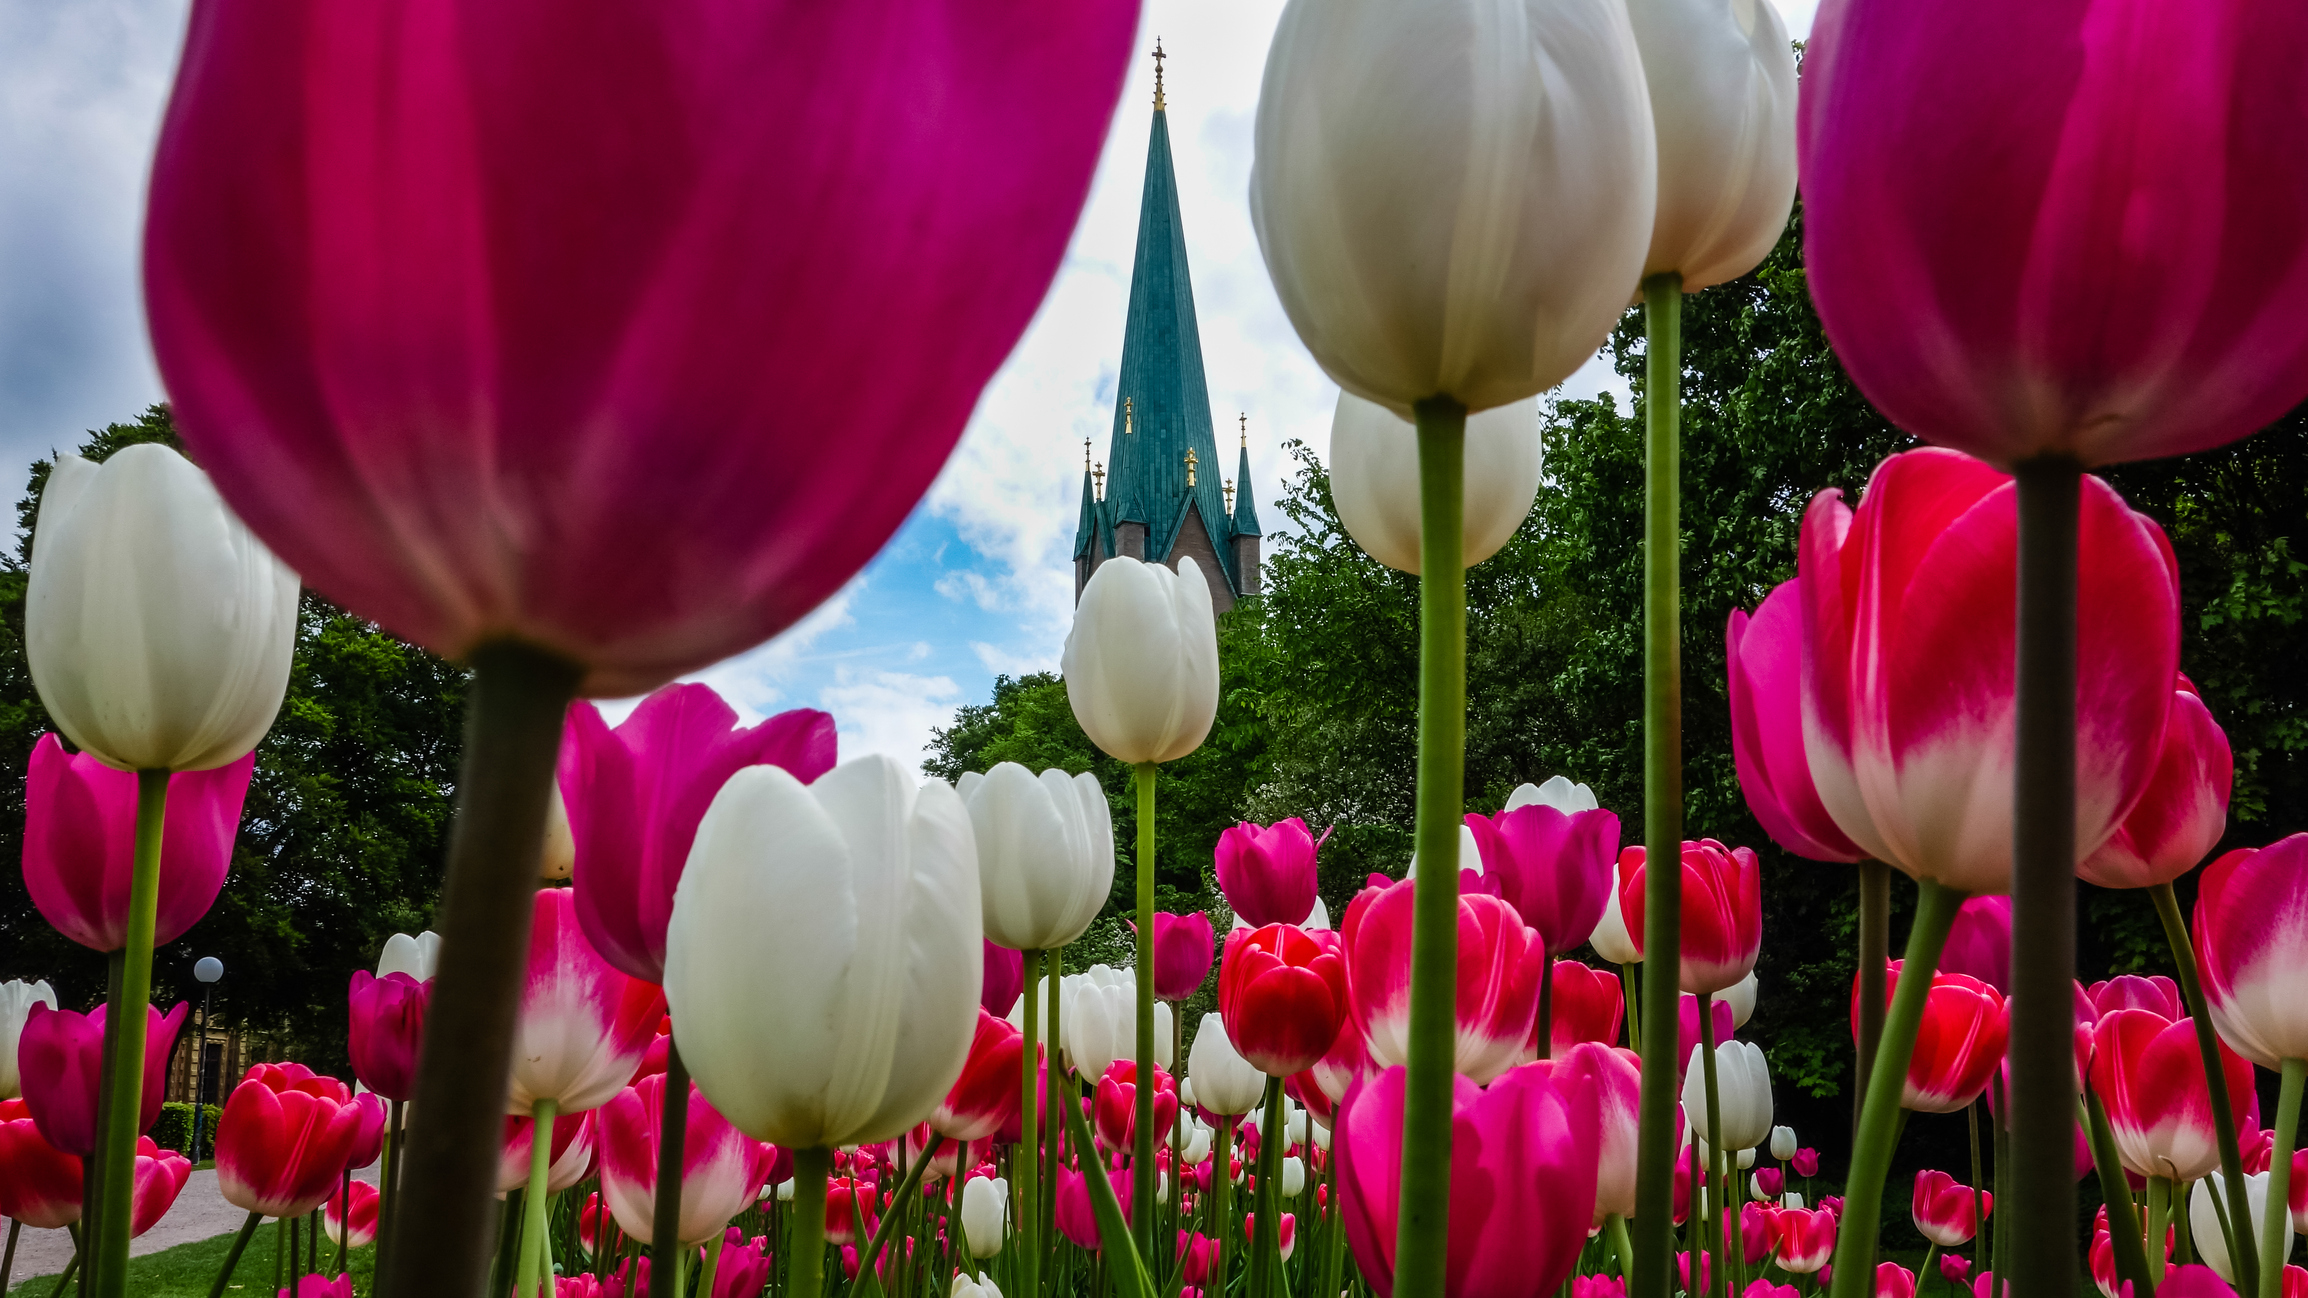 Les visiteurs du château de Cheverny, dans le Loir-et-Cher, peuvent admirer au printemps un parterre de 500 000 tulipes. Photo d’illustration. Copyright (c) Katrin Ray Shumakov/Istock.